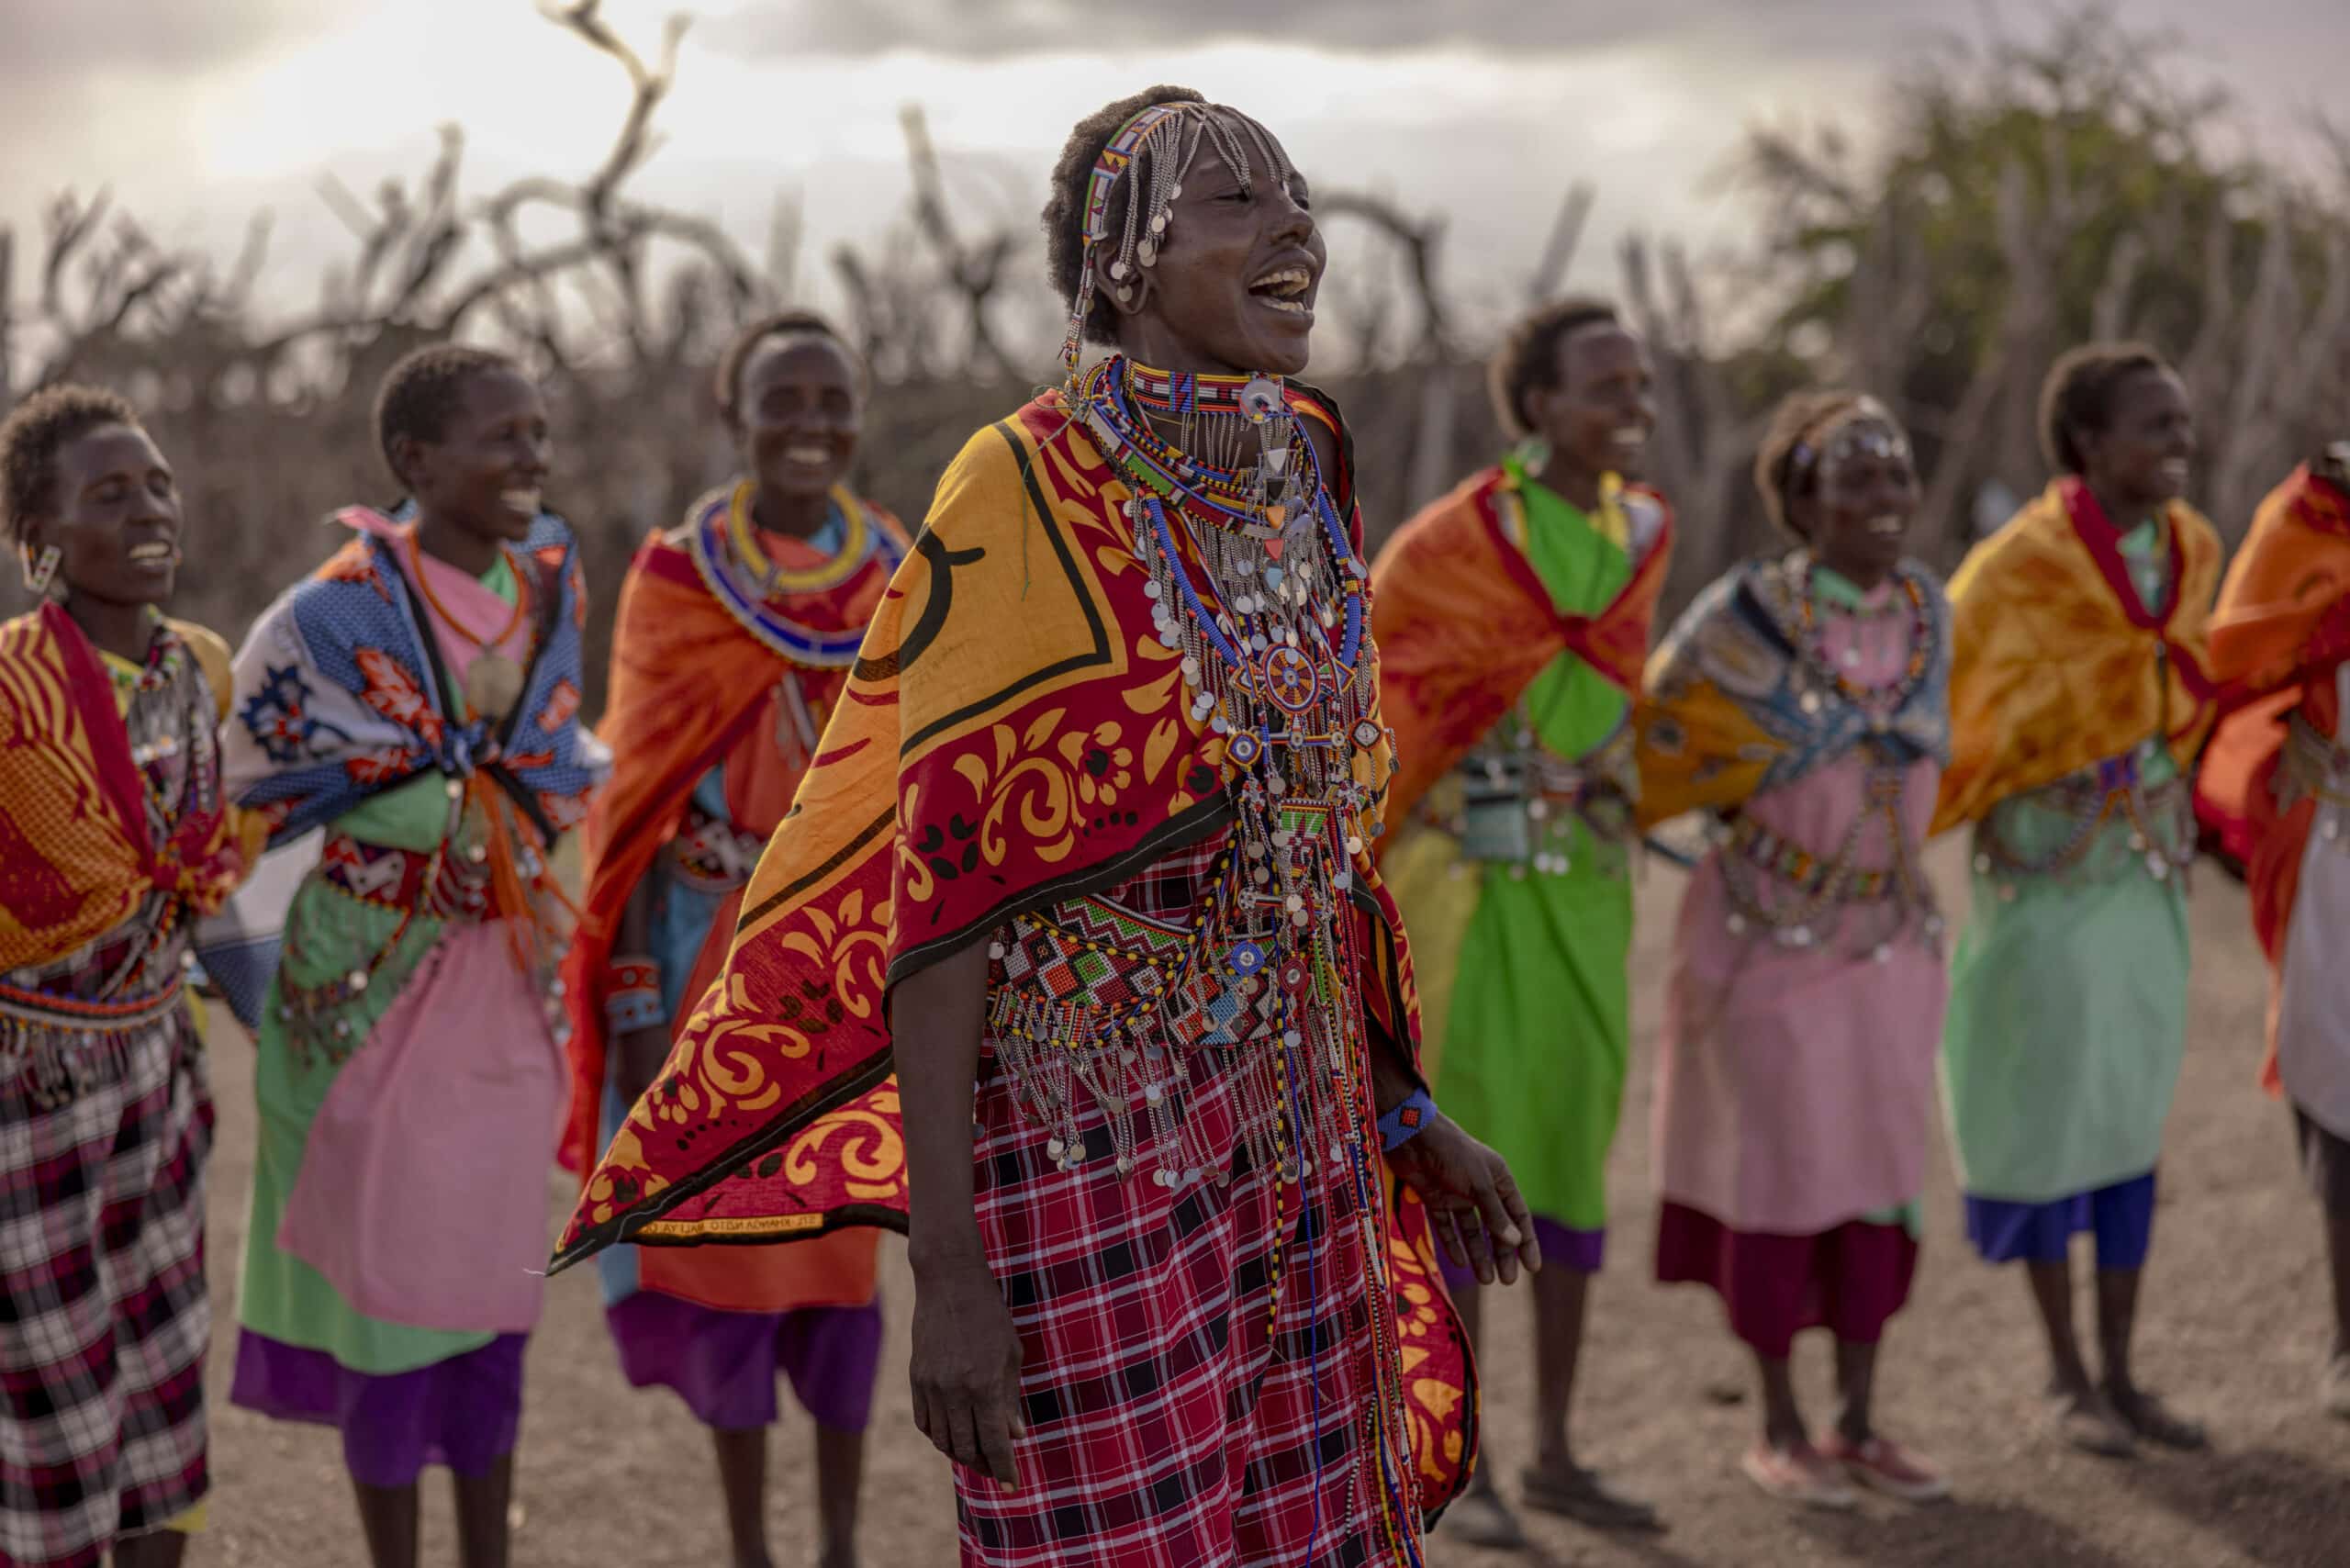 Eine Gruppe Massai-Frauen in traditioneller Kleidung, geschmückt mit bunten Perlen und Stoffen, tanzt fröhlich in der Abenddämmerung in einer trockenen, buschigen Landschaft. © Fotografie Tomas Rodriguez